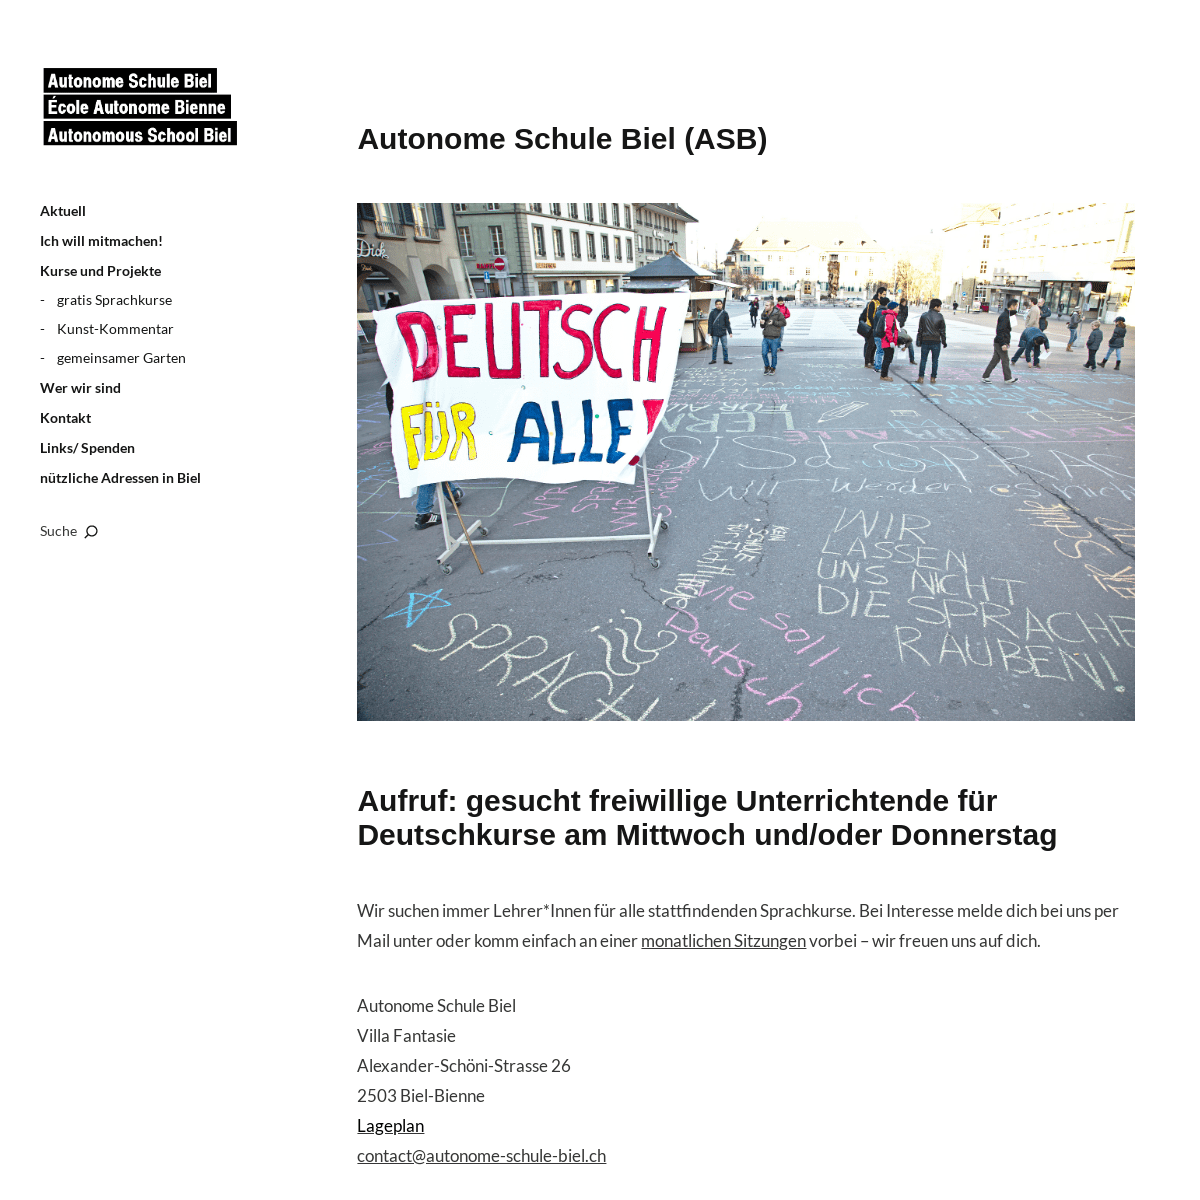 A complete backup of autonome-schule-biel.ch